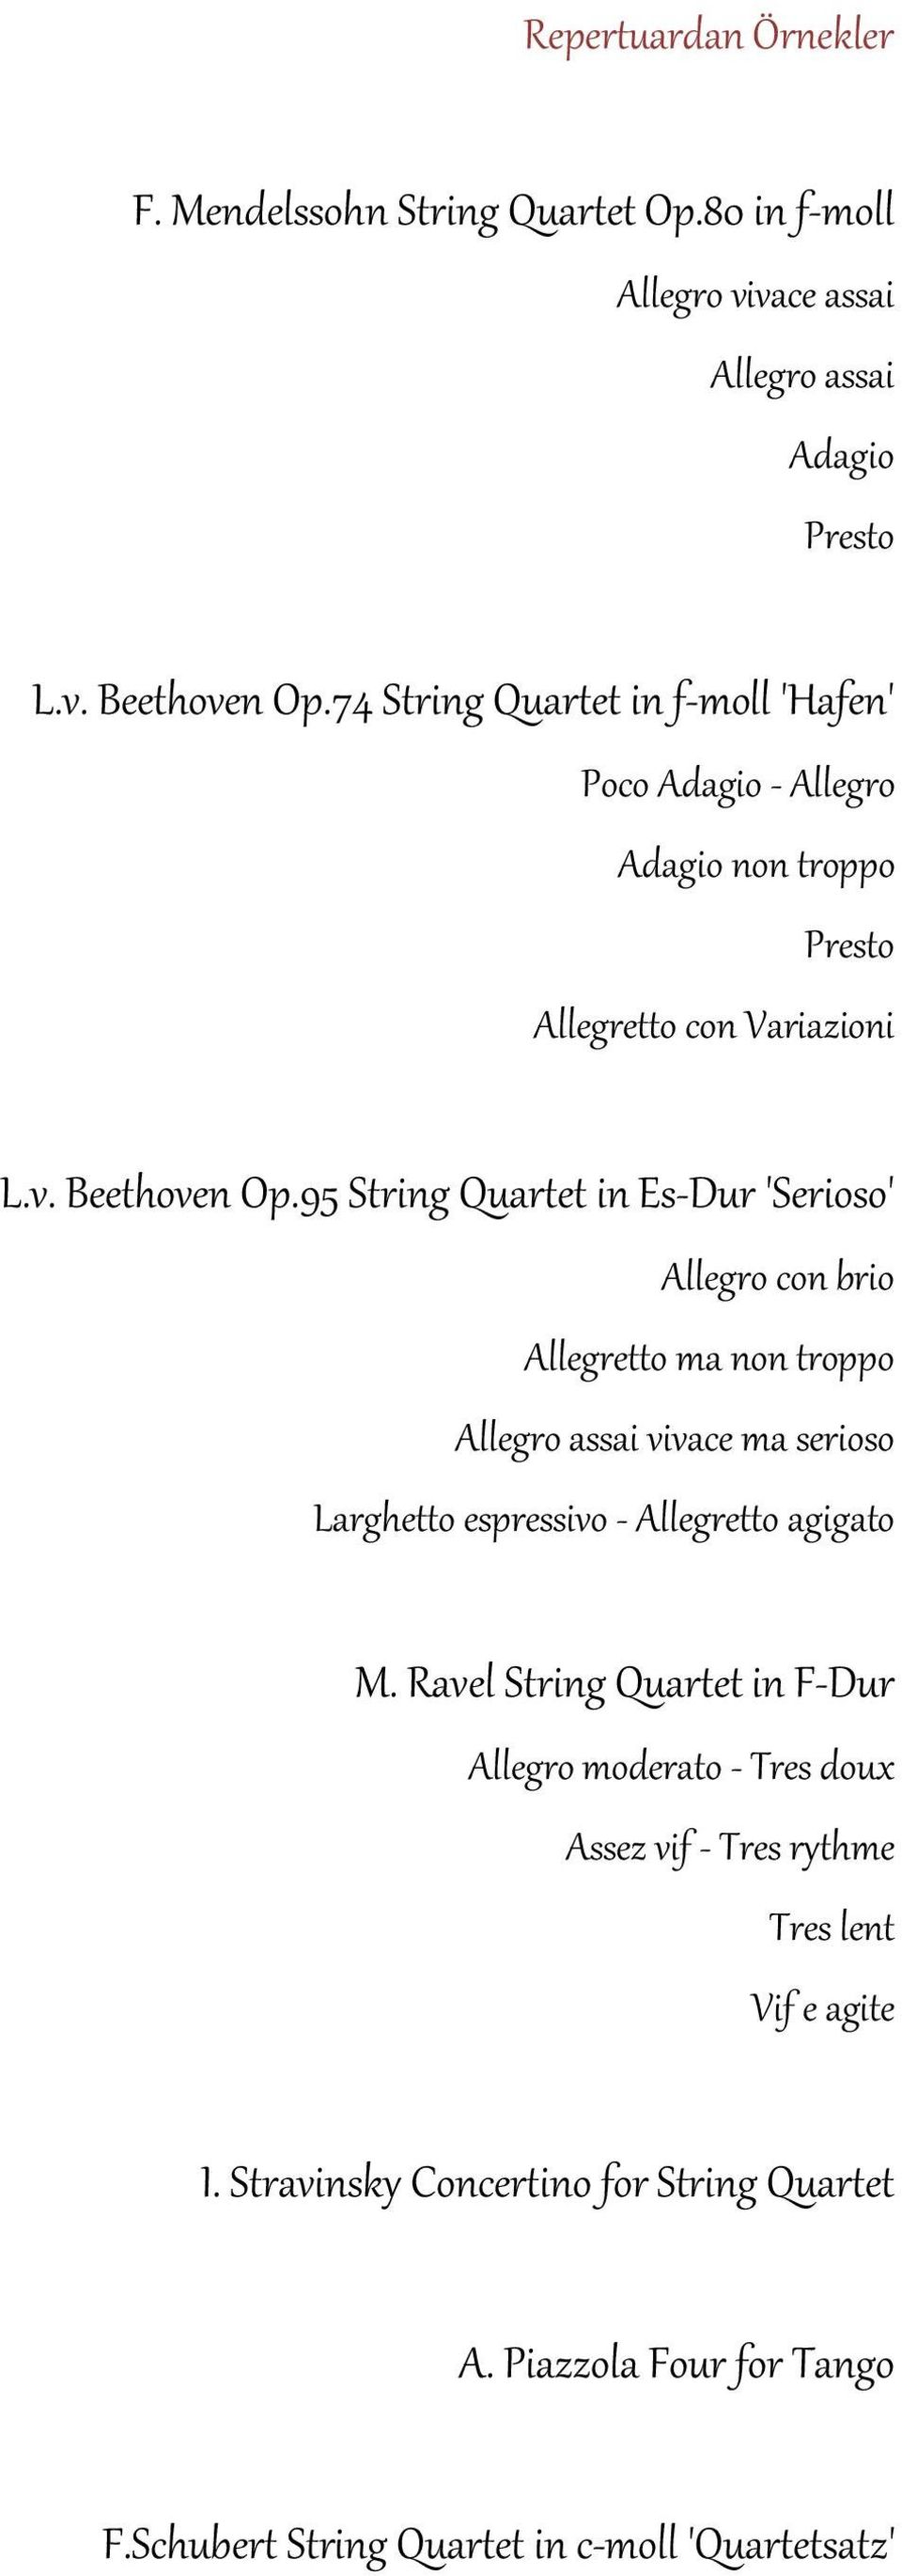 95 String Quartet in Es-Dur 'Serioso' Allegro con brio Allegretto ma non troppo Allegro assai vivace ma serioso Larghetto espressivo - Allegretto agigato M.